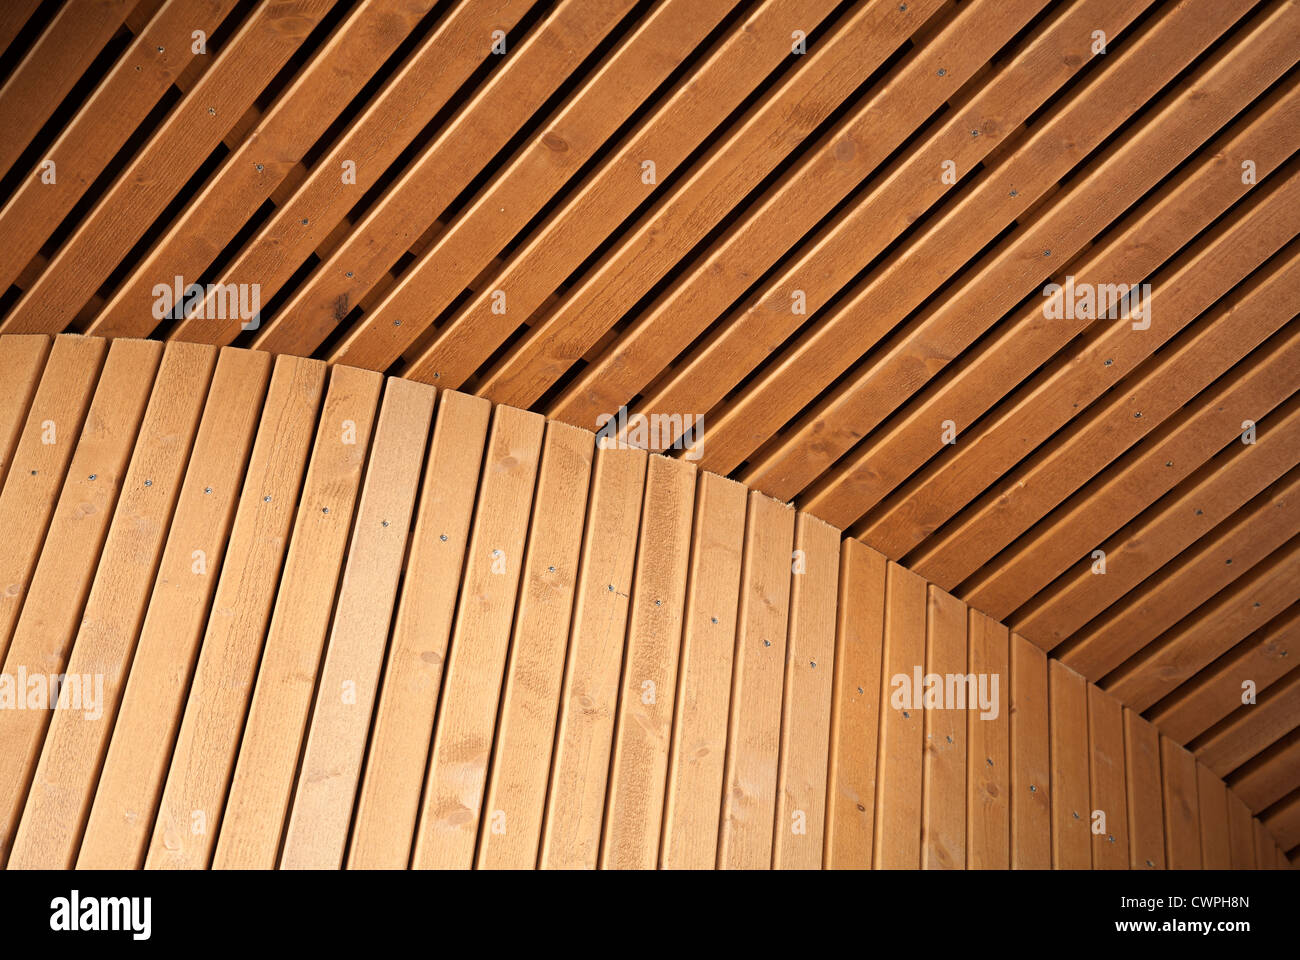 Abstrait architecture fond bordé en bois avec panneaux de construction. Natural design scandinave par exemple. Banque D'Images